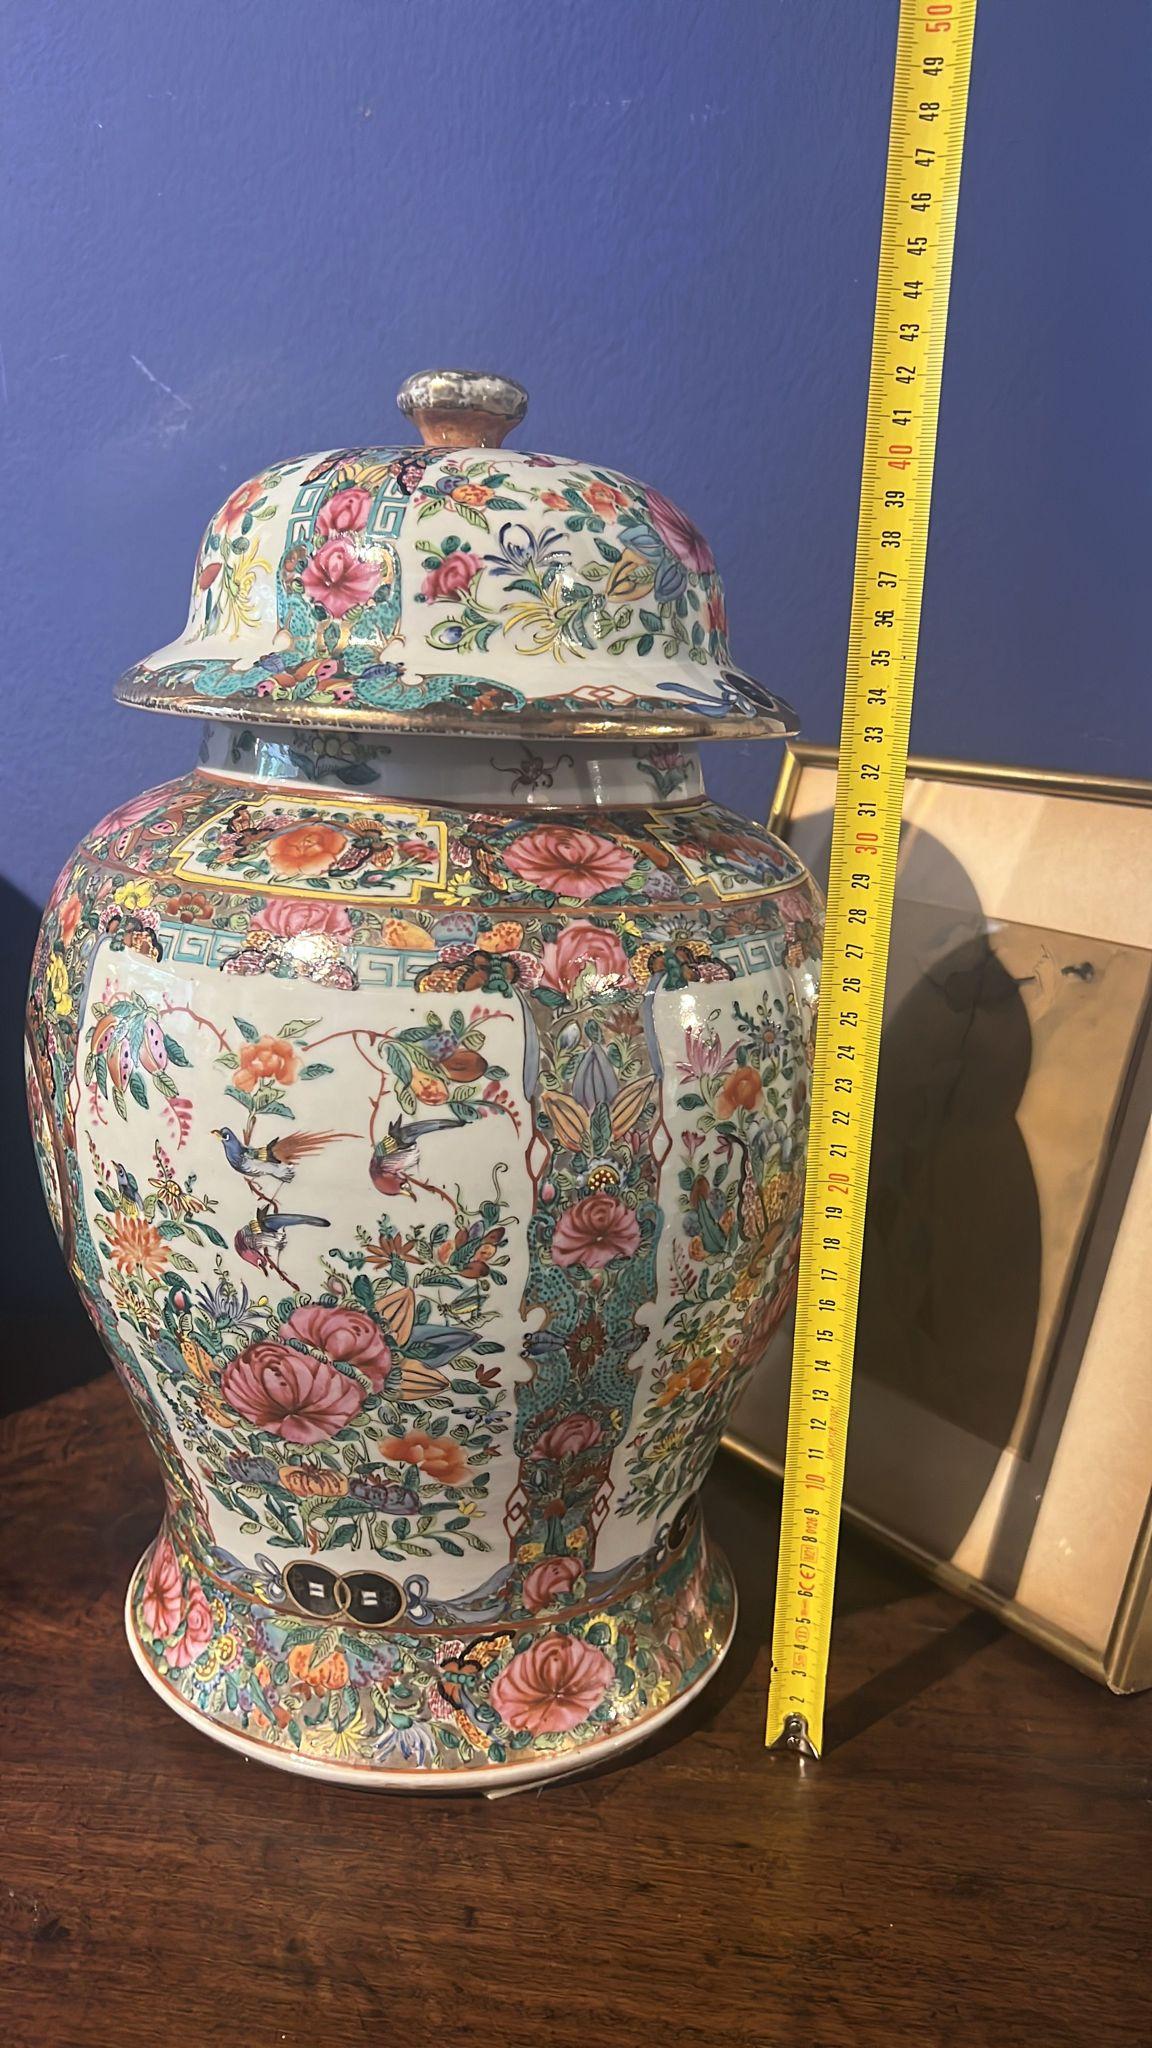 Chinesische Mandarin-Vasen 19. Jahrhundert
perfekter Zustand
ohne Haare oder Restaurationen
Originalzustand
45cm x 27cm